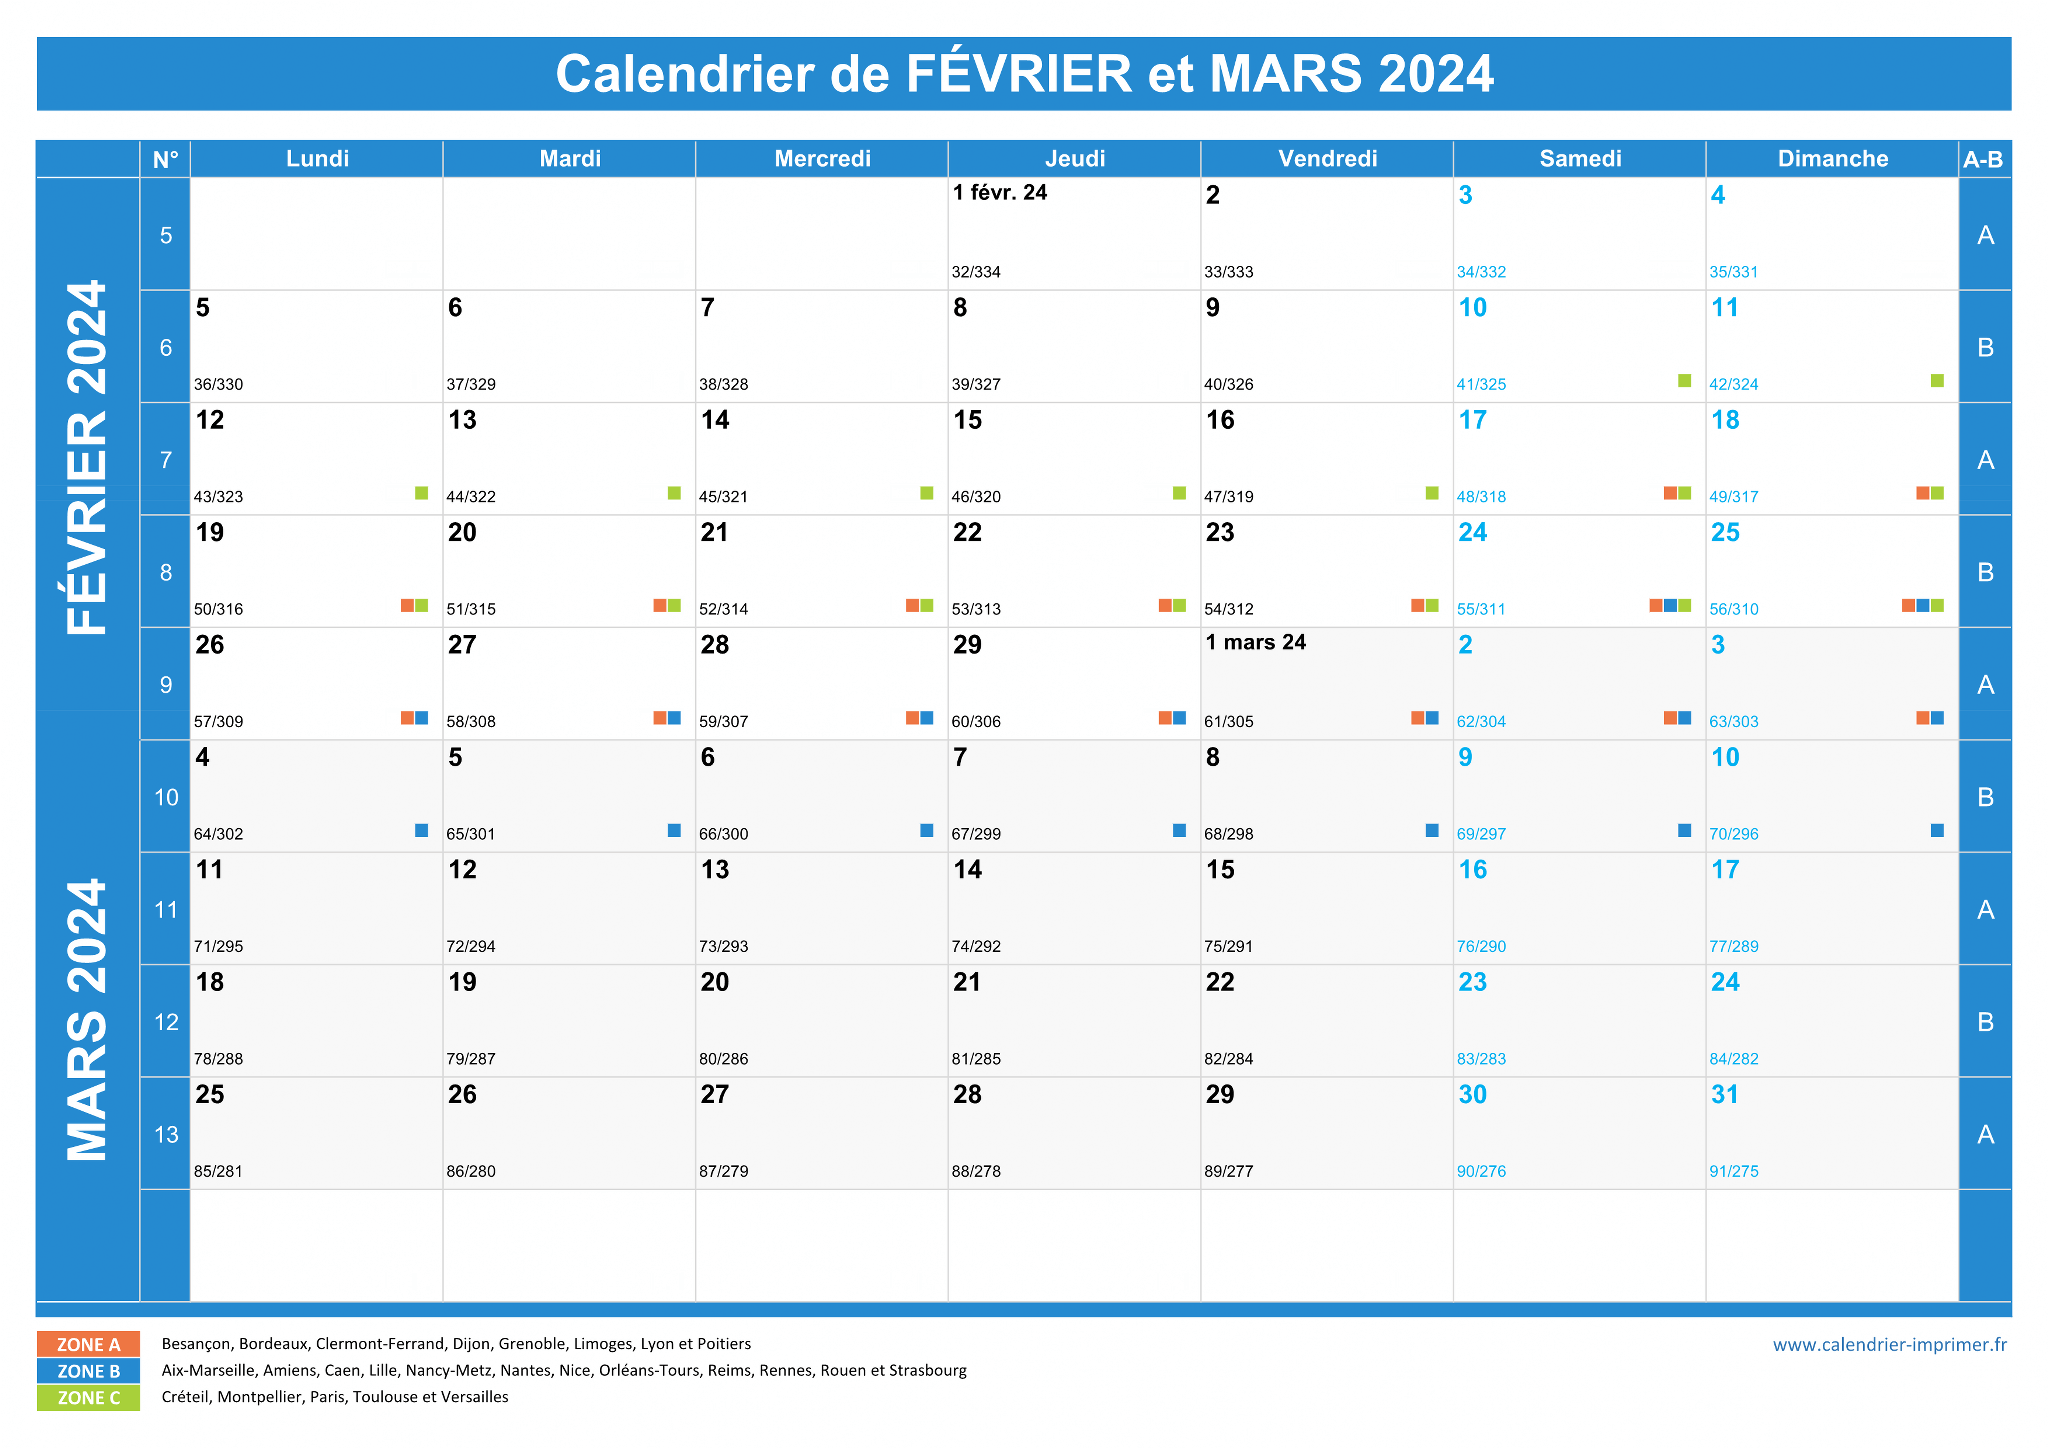 Semaine Paire - Semaine impaire : calendrier 2024-2025